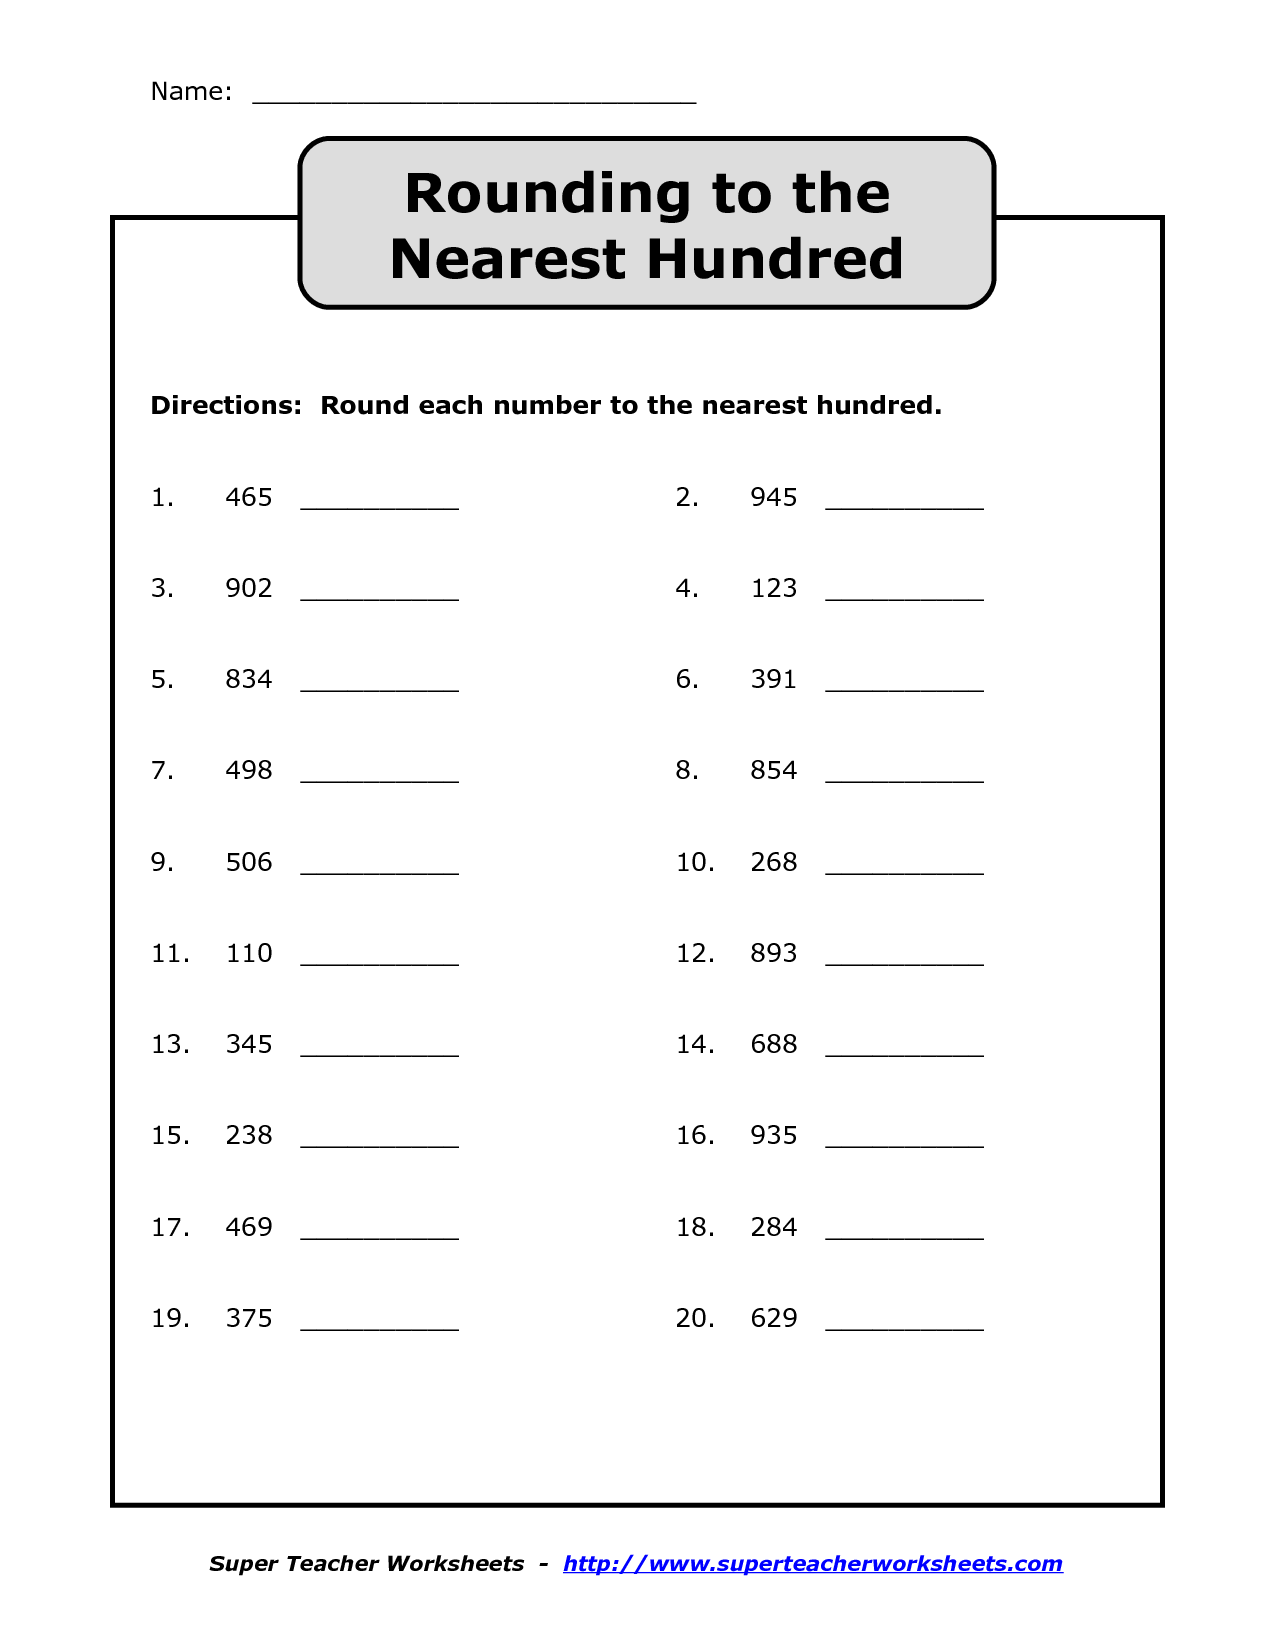 rounding-numbers-worksheet-3rd-grade